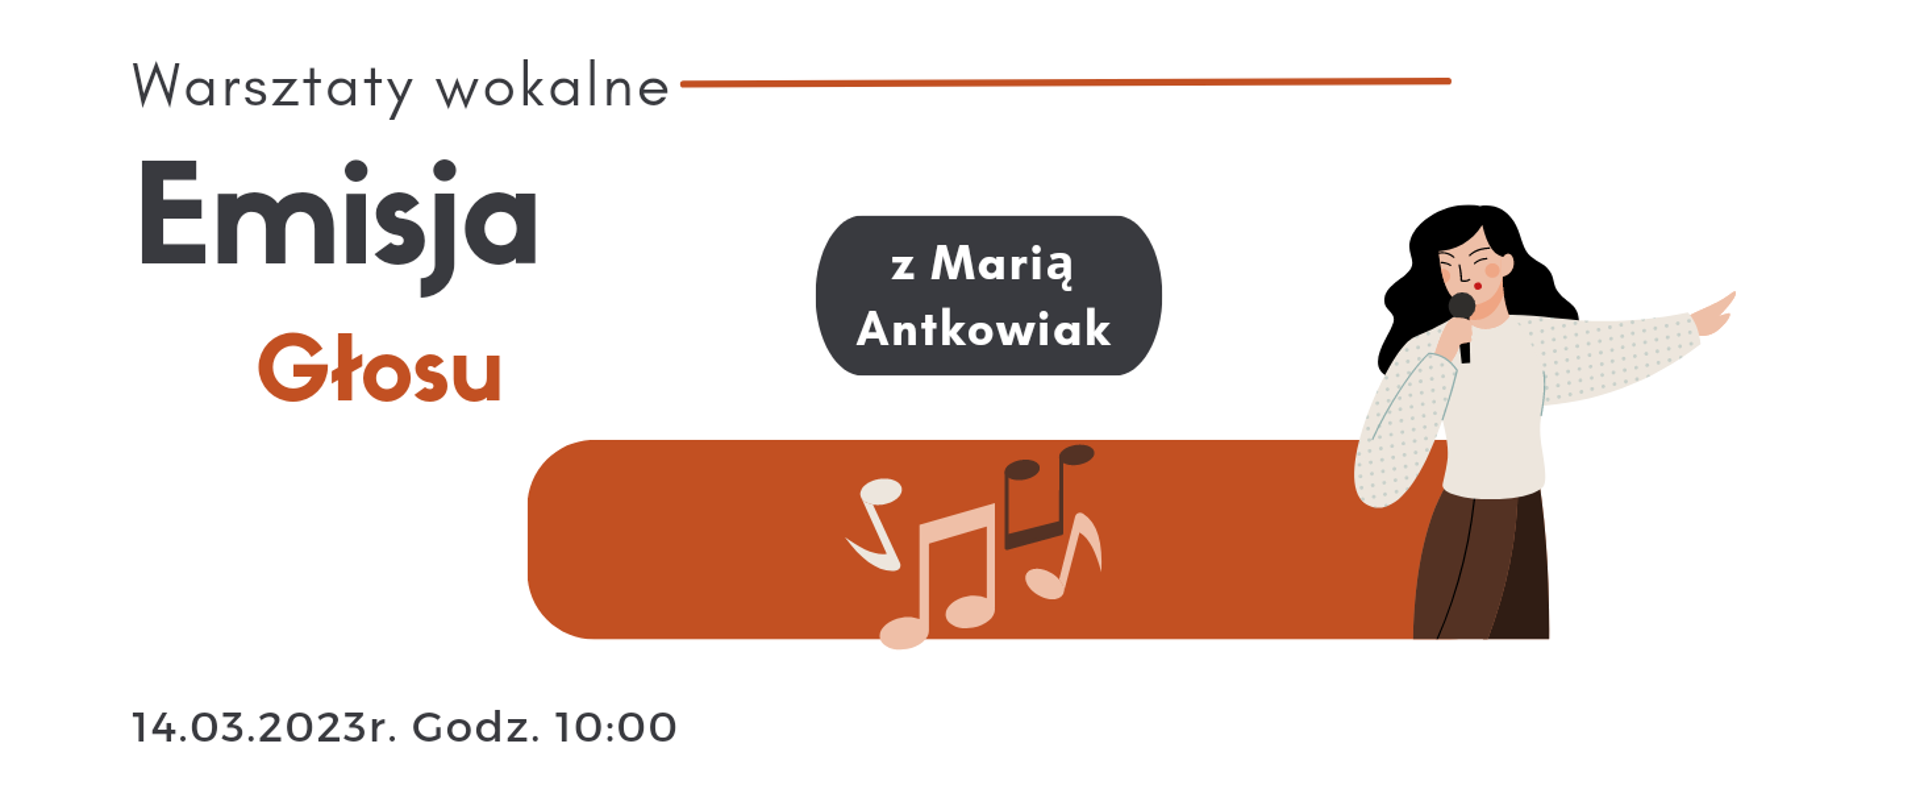 Grafika z tekstem: Warsztaty wokalne, emisja głosu z Marią Antkowiak - 14 marca 2023 godz. 10:00